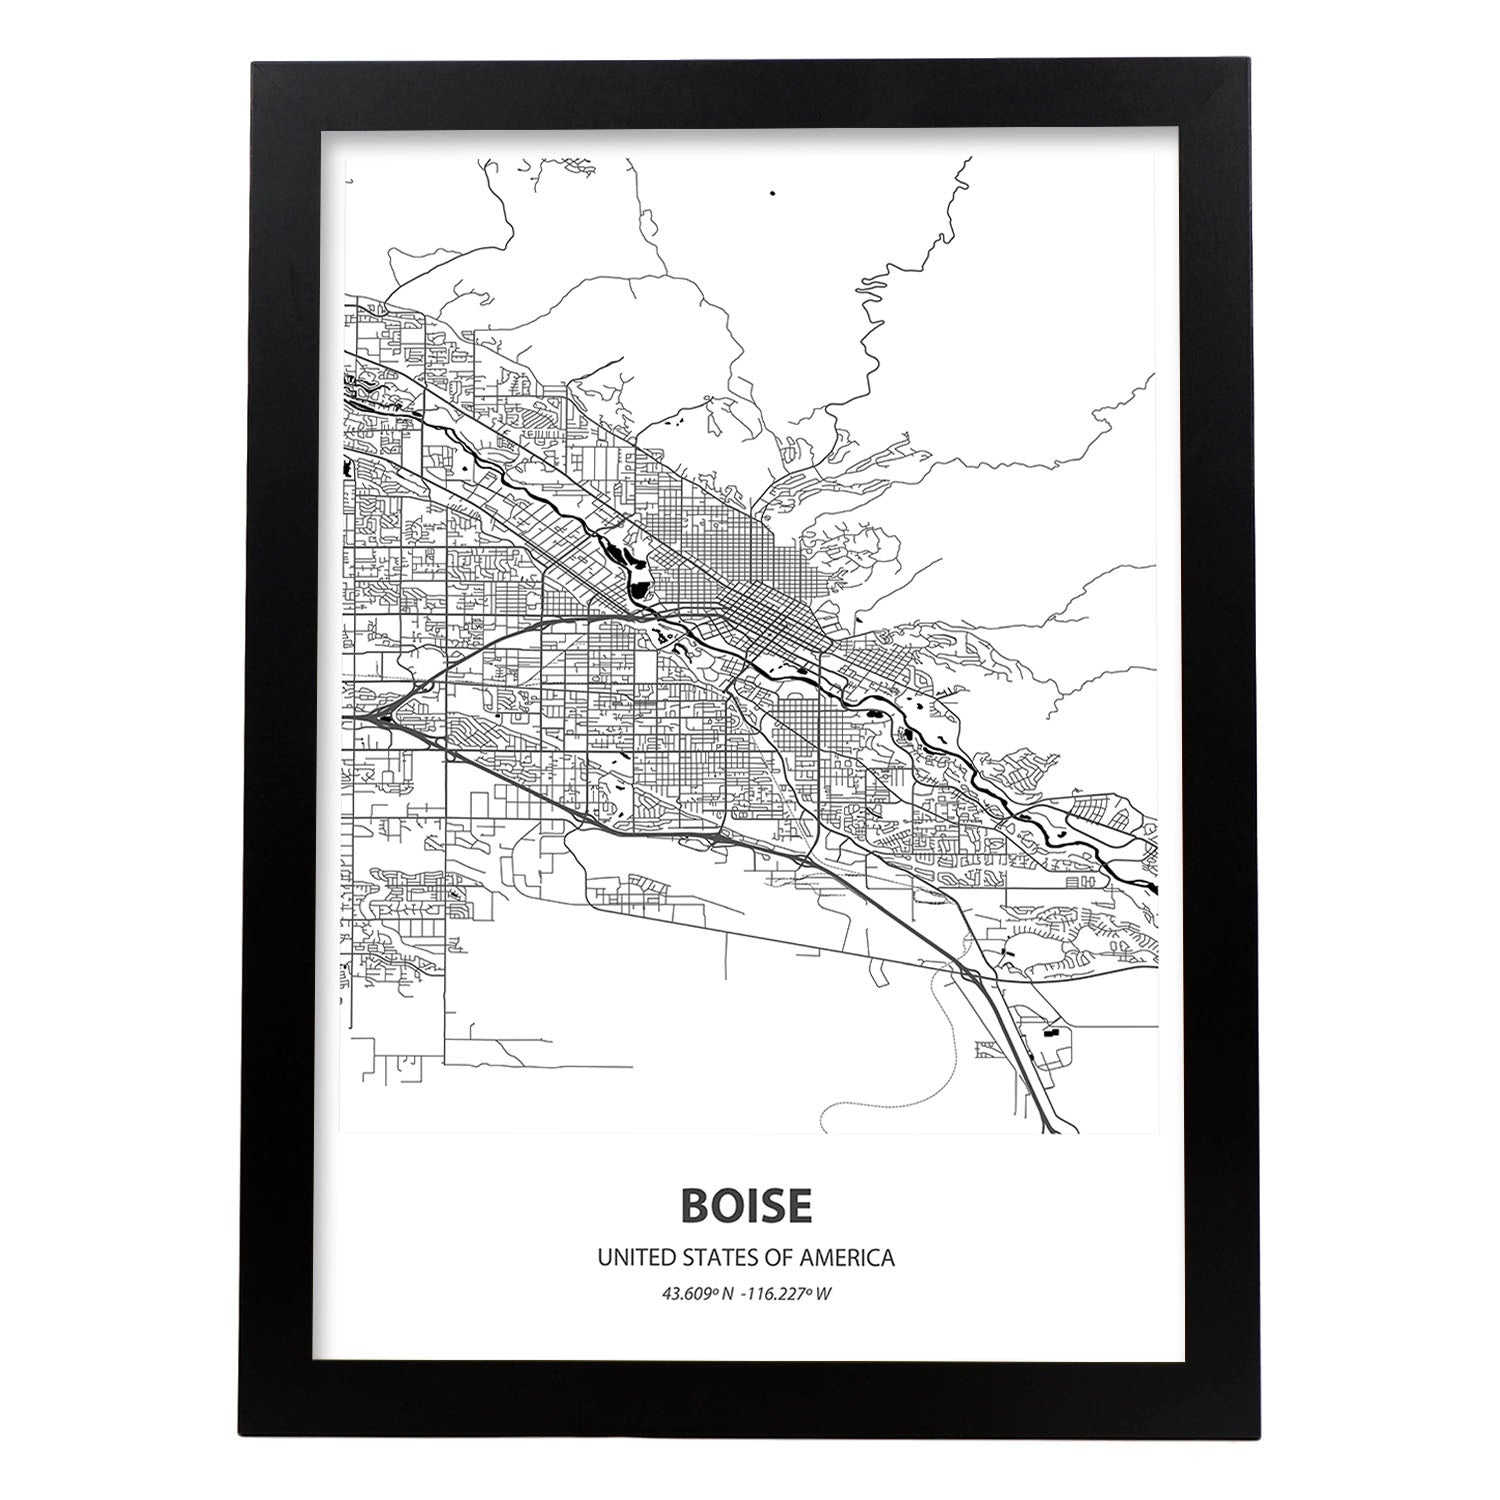 Poster con mapa de Boise - USA. Láminas de ciudades de Estados Unidos con mares y ríos en color negro.-Artwork-Nacnic-A4-Marco Negro-Nacnic Estudio SL